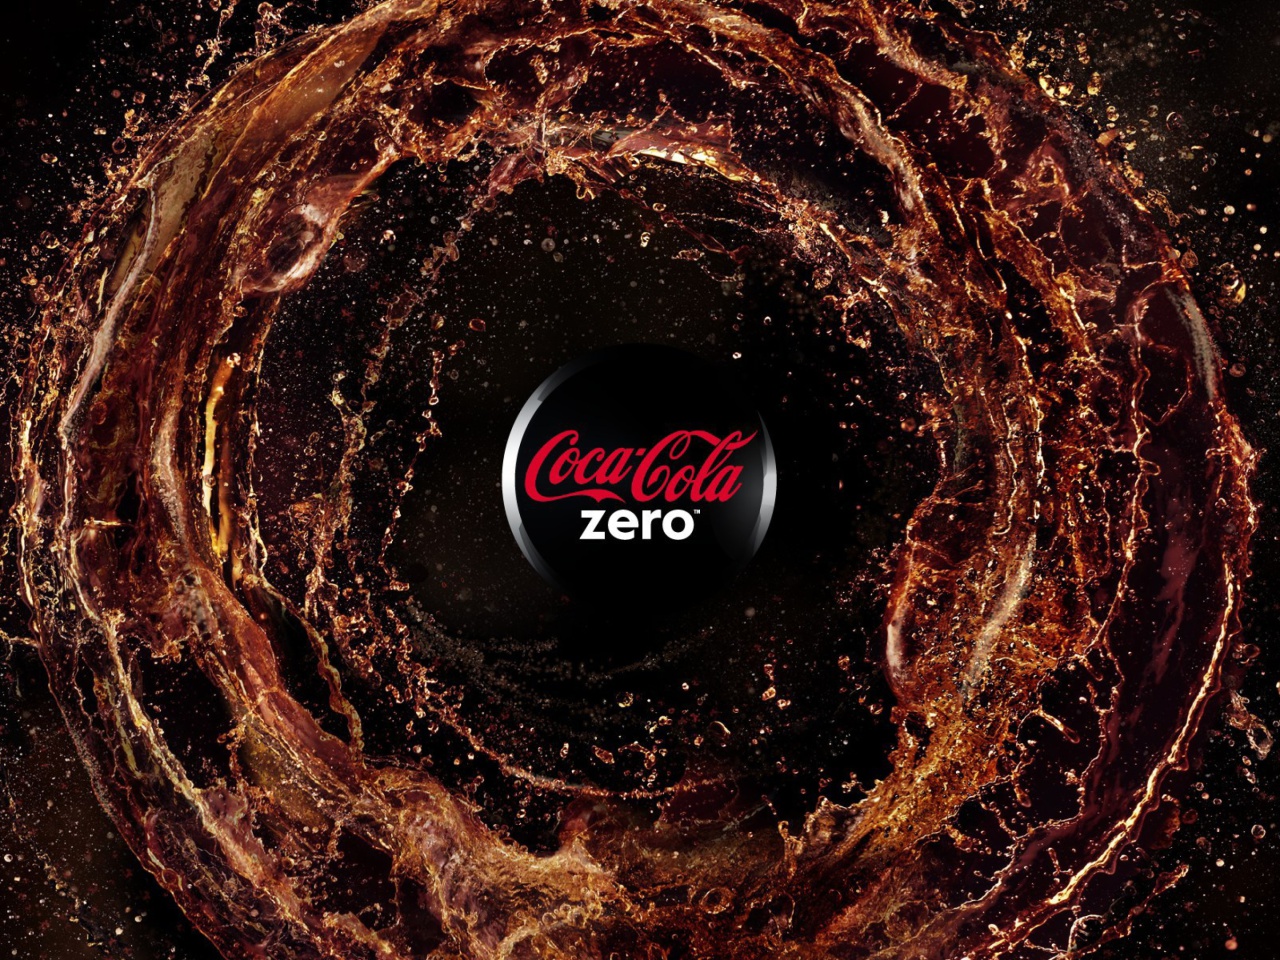 Das Coca Cola Zero - Diet and Sugar Free Wallpaper 1280x960